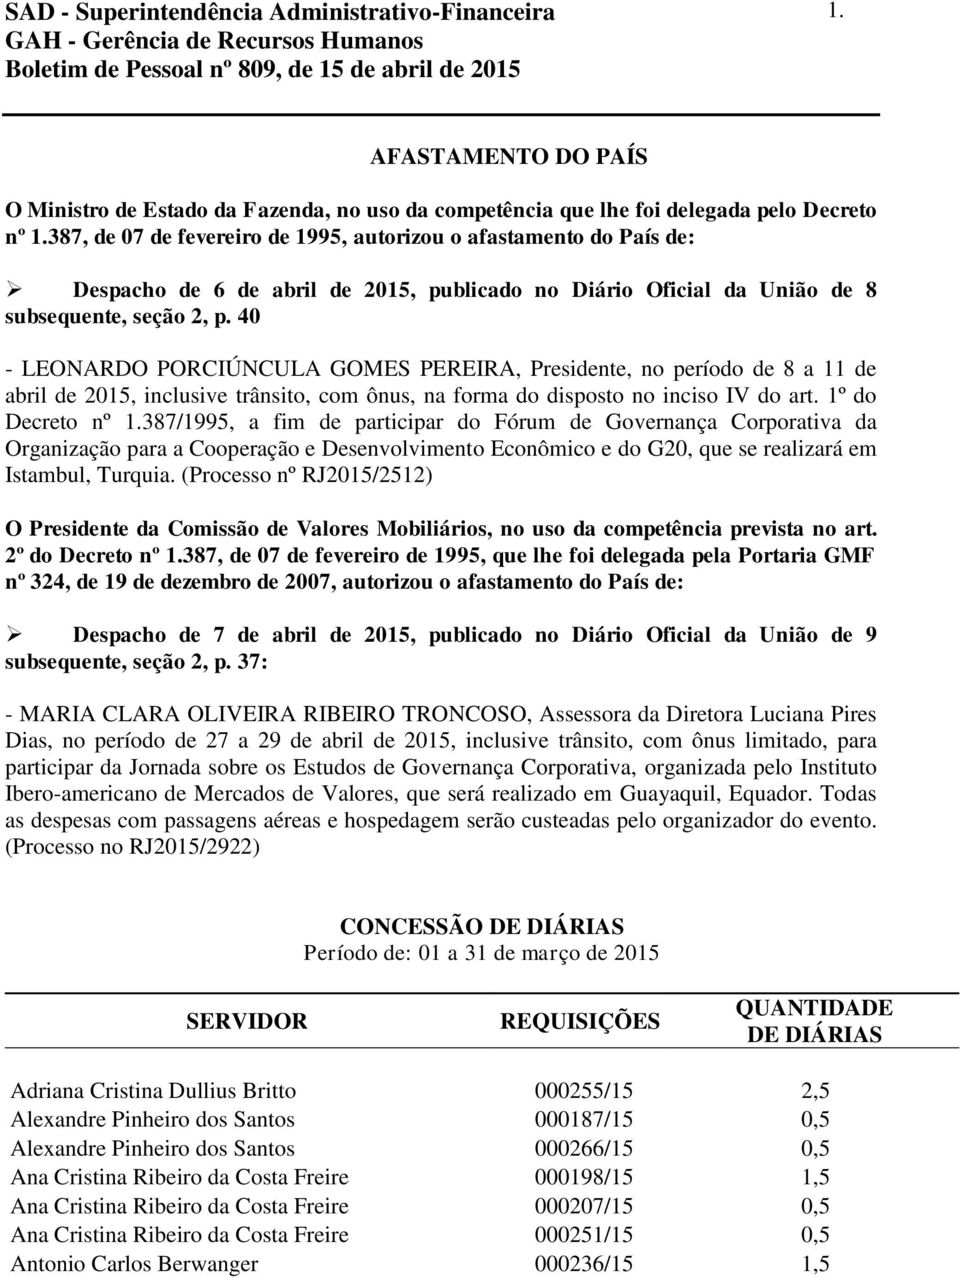 40 - LEONARDO PORCIÚNCULA GOMES PEREIRA, Presidente, no período de 8 a 11 de abril de 15, inclusive trânsito, com ônus, na forma do disposto no inciso IV do art. 1º do Decreto nº 1.